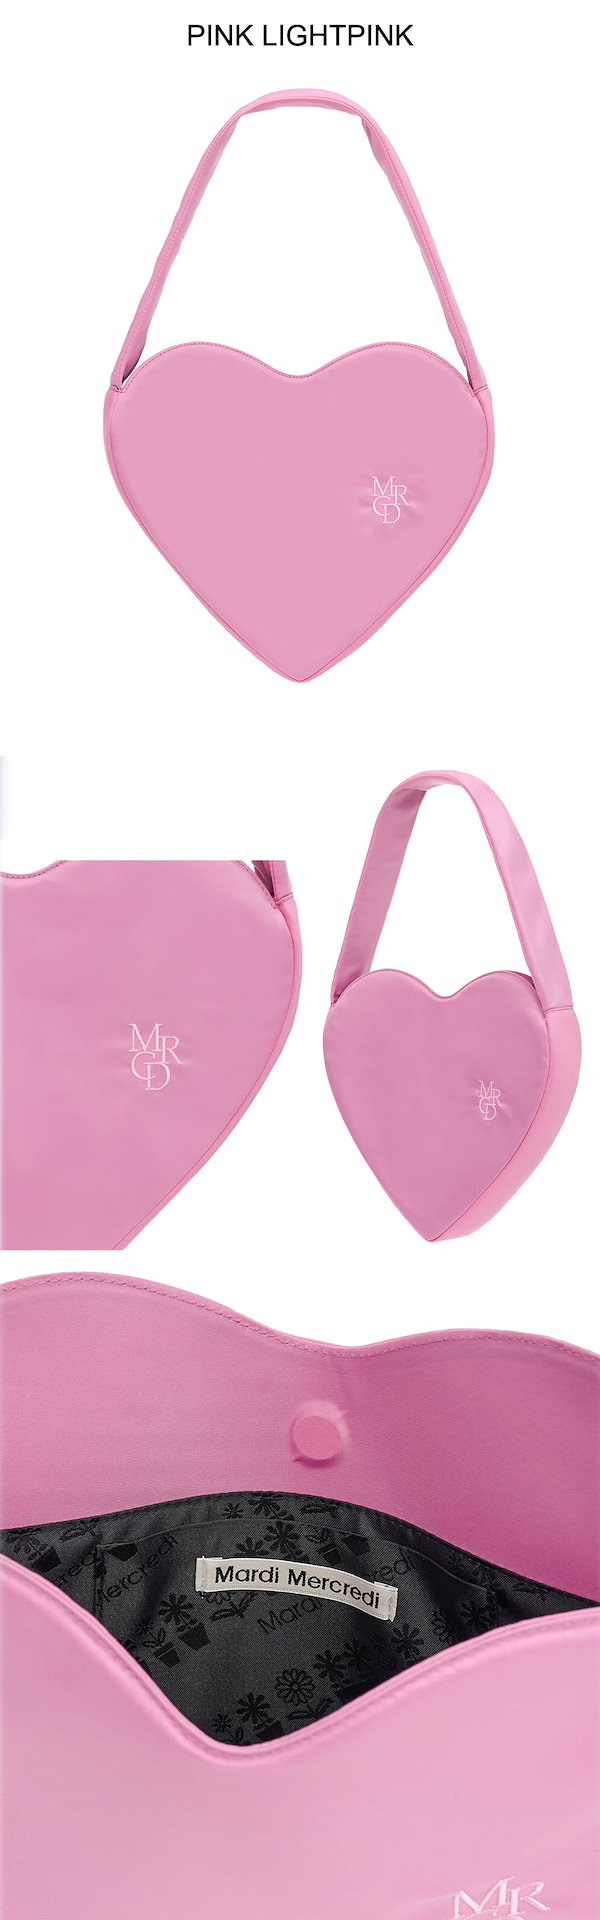 【無料配送】【Mardi Mercredi(マルディメクルディ)】 HEART MRCD BAG ハート バッグ 可愛らしくユニークなムード  【並行輸入品】